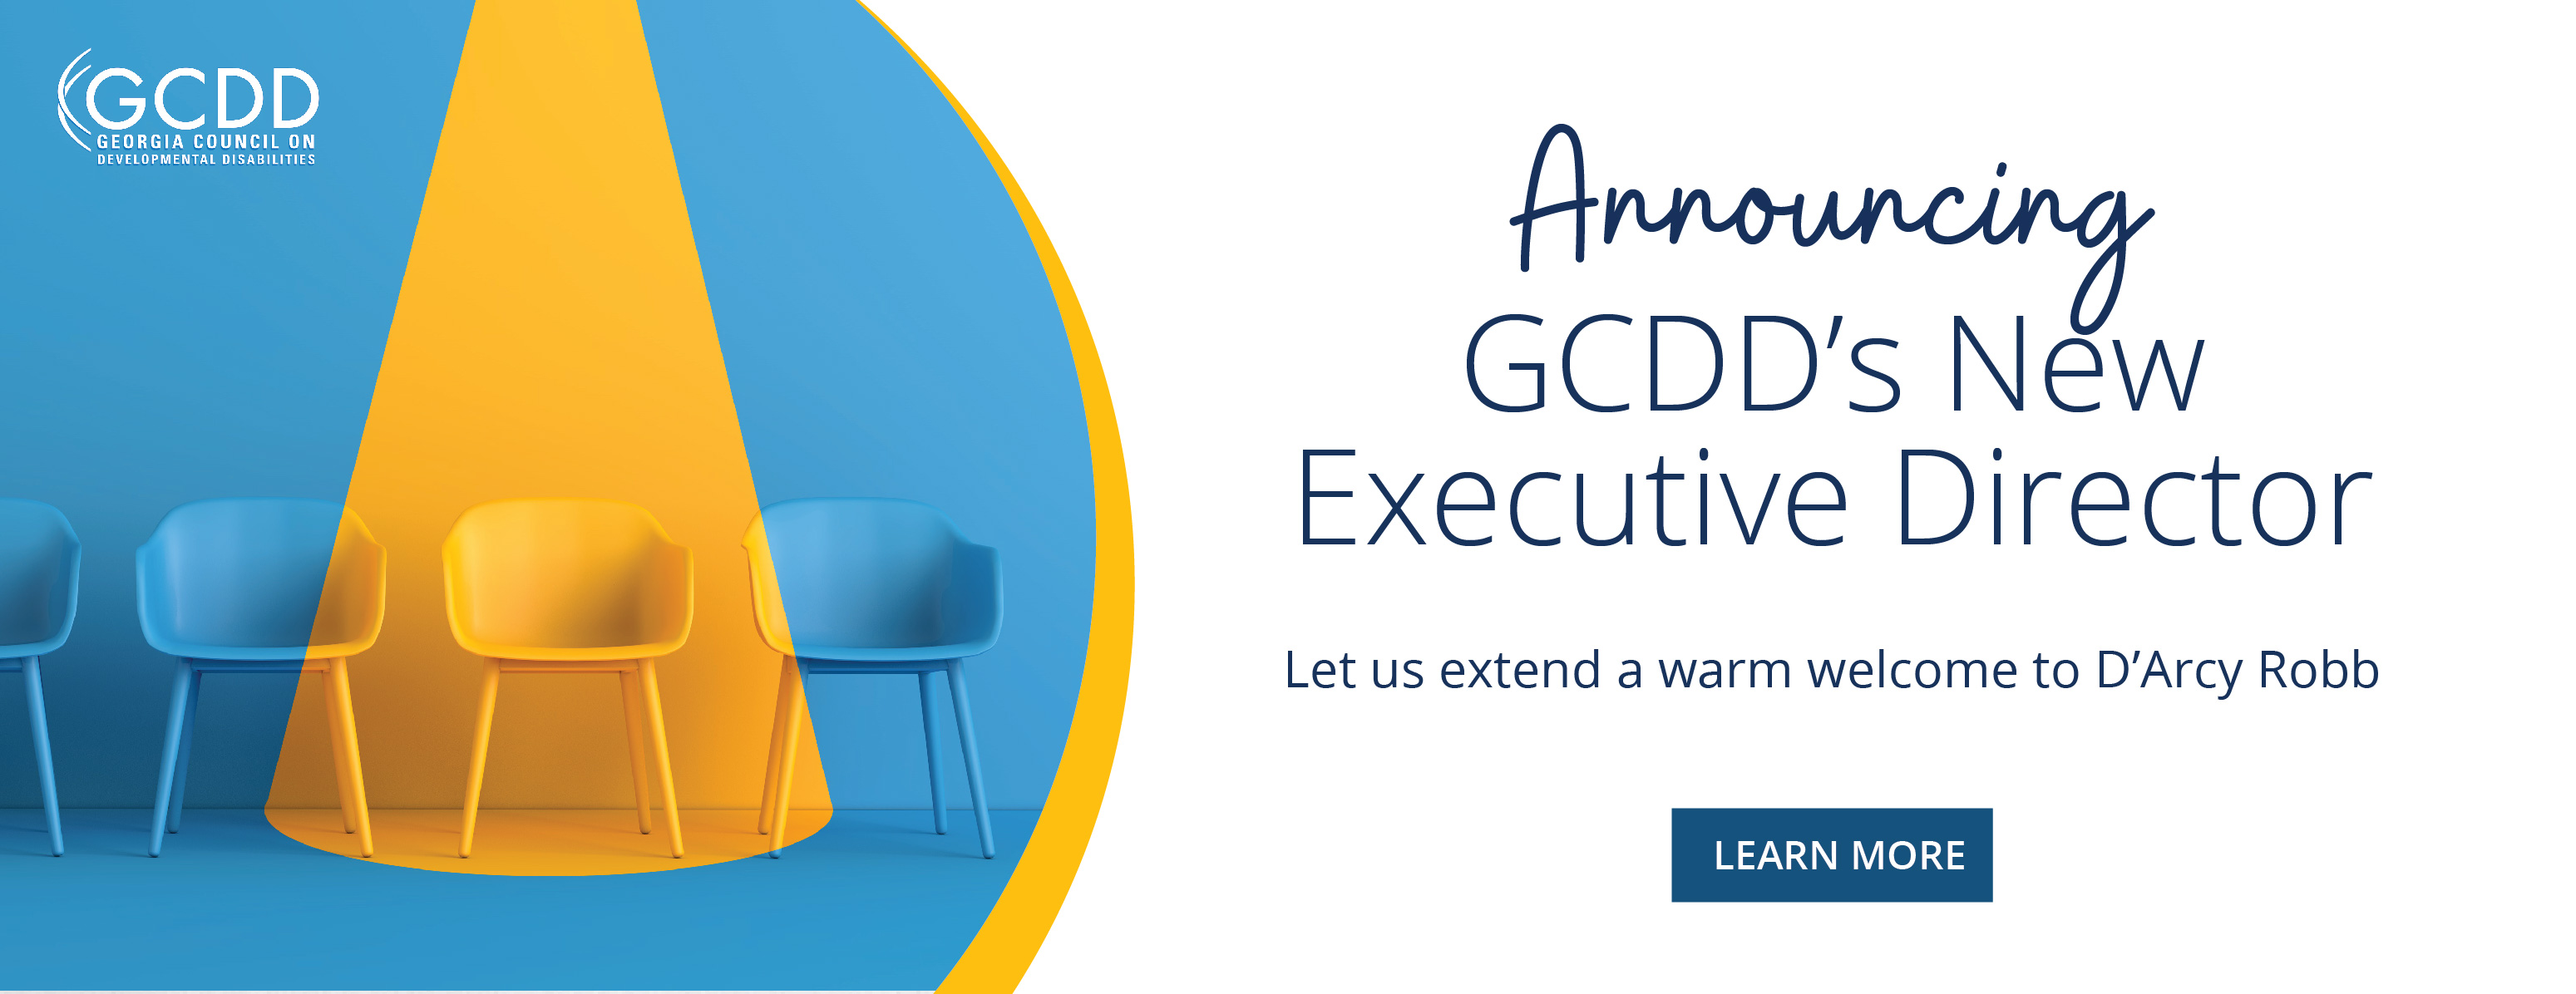 New GCDD Executive Director